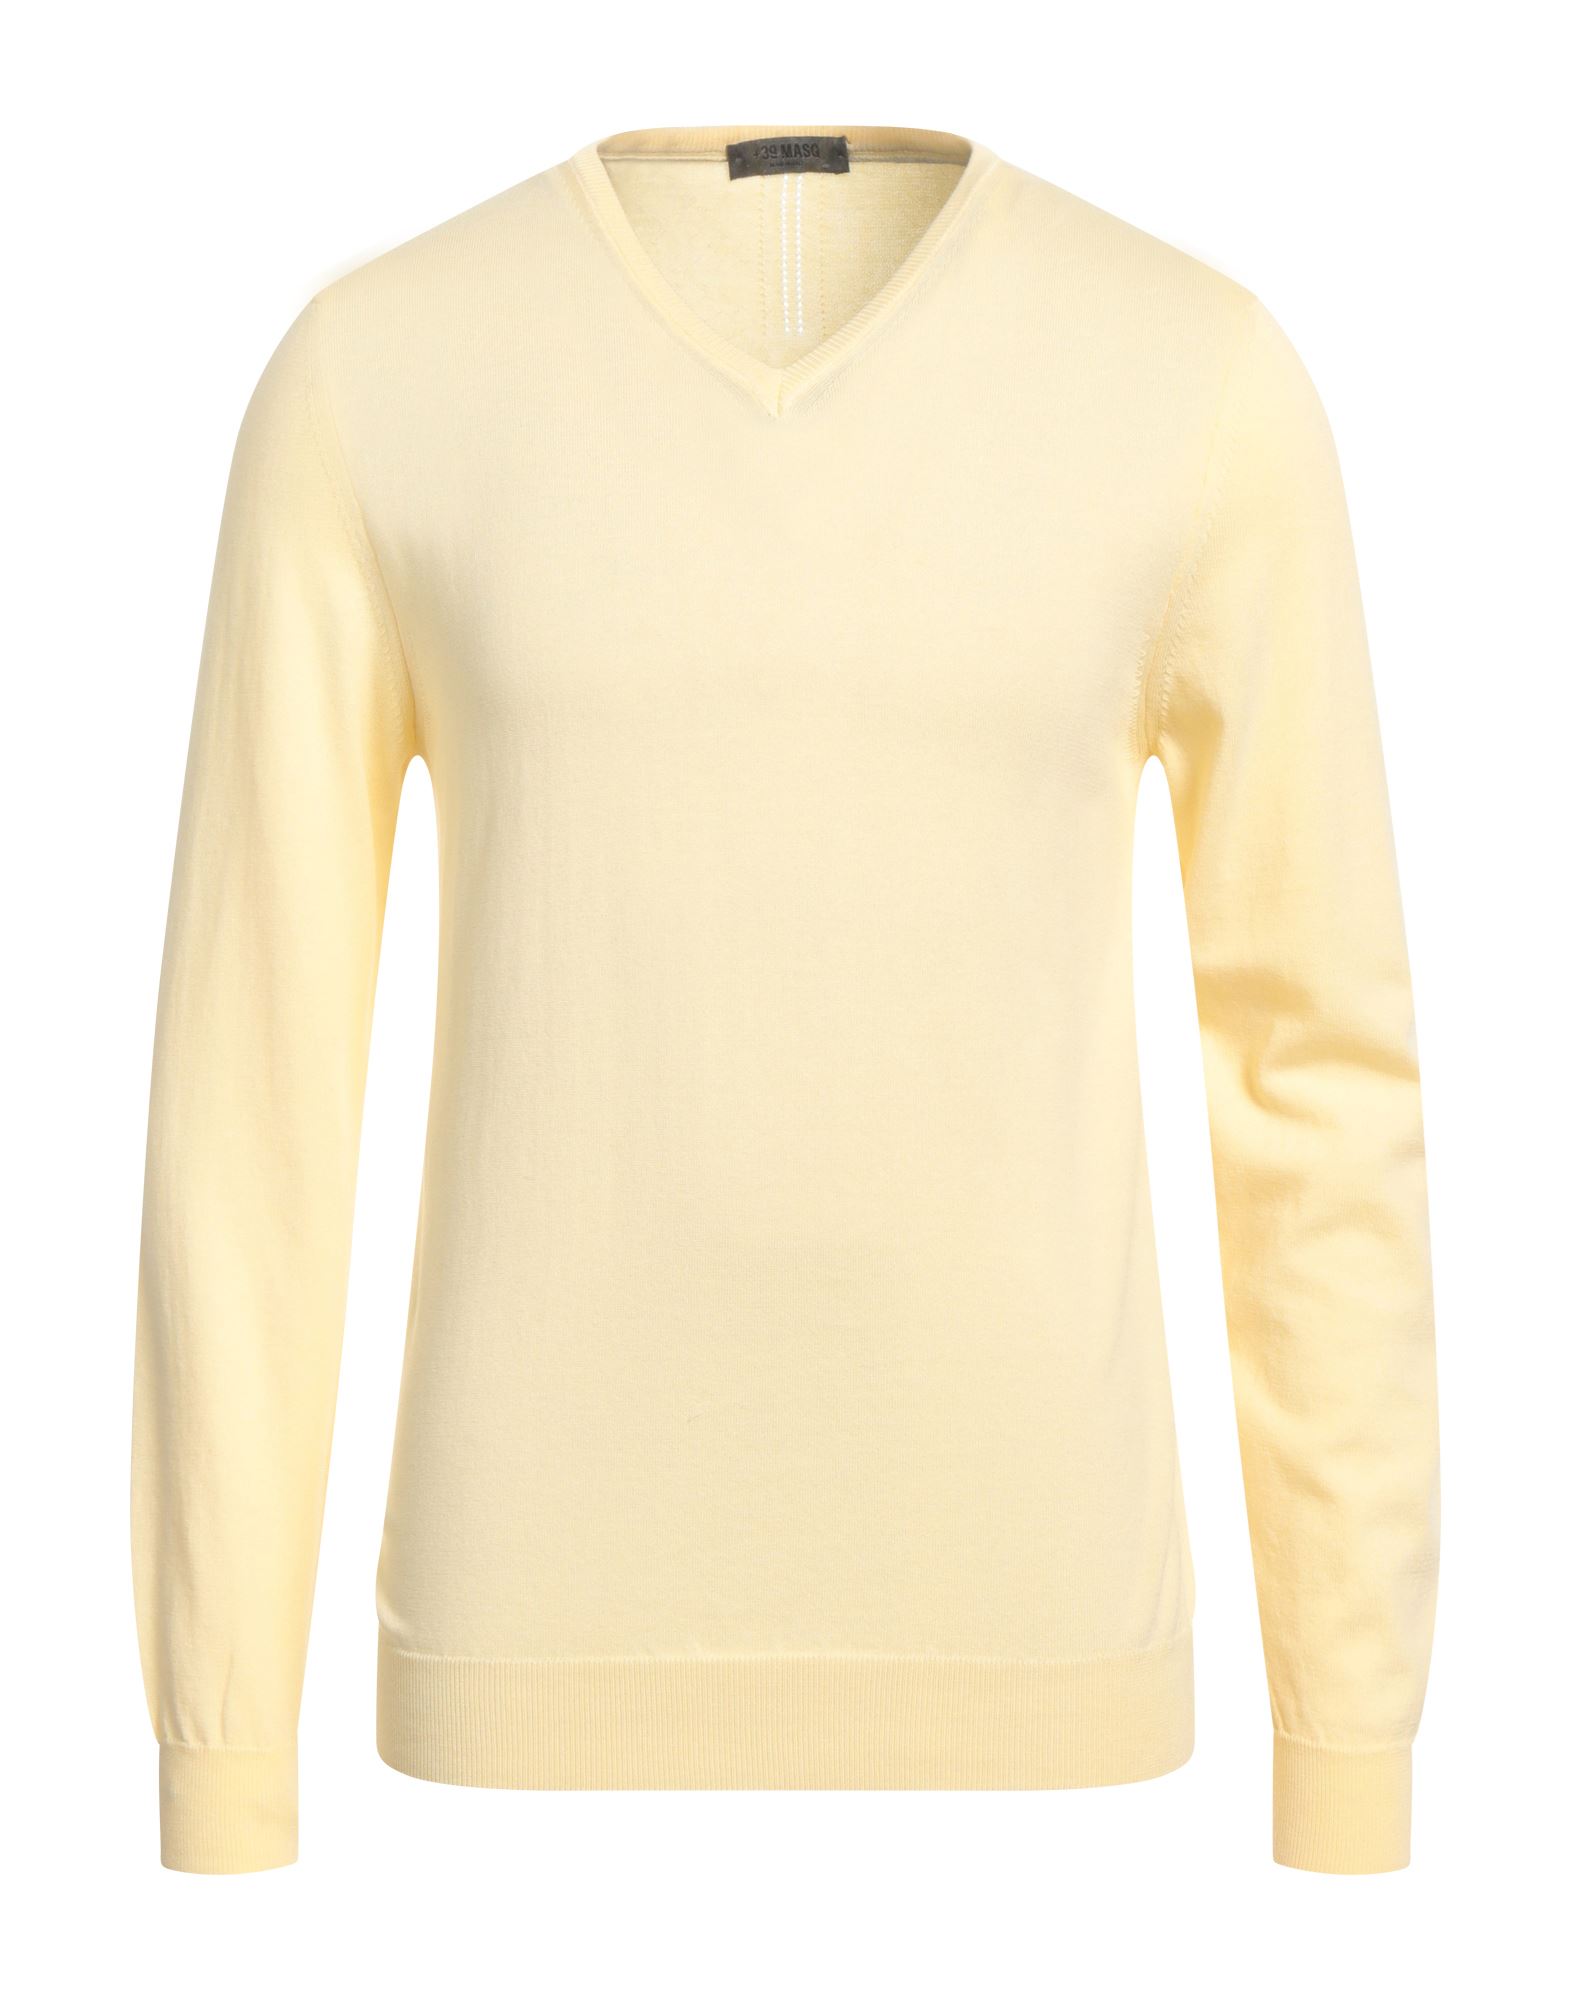 +39 Masq Man Sweater Light Yellow Size L Cotton